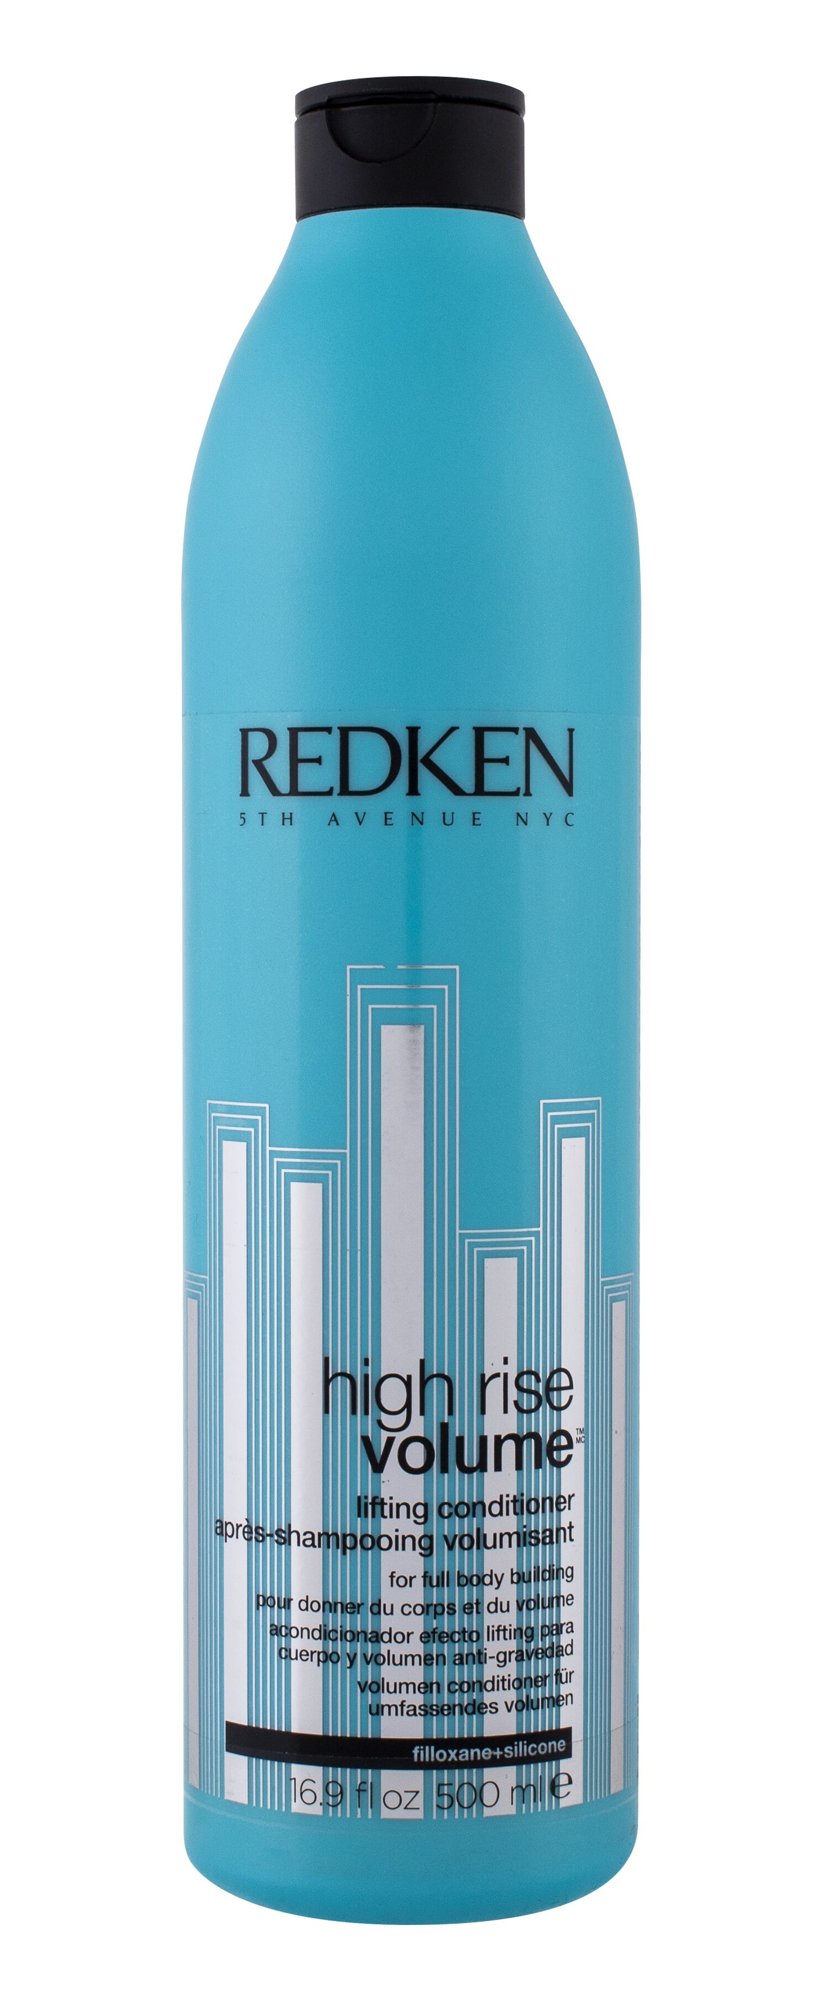 Redken High Rise Volume 500ml kondicionierius